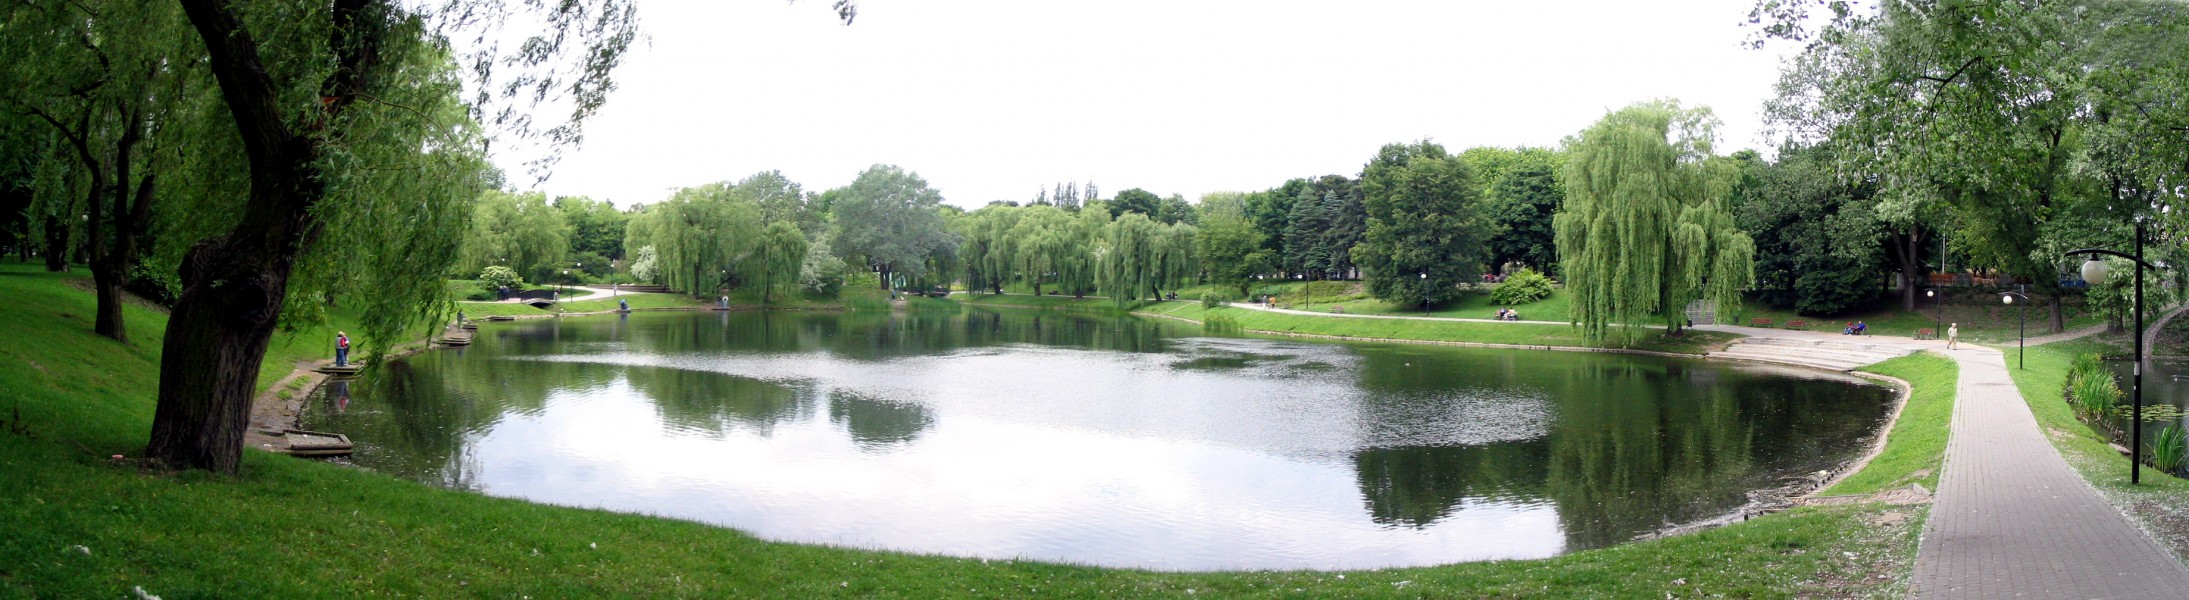 Park Moczydło. Ogród dla osiedla Wola i jeziorko